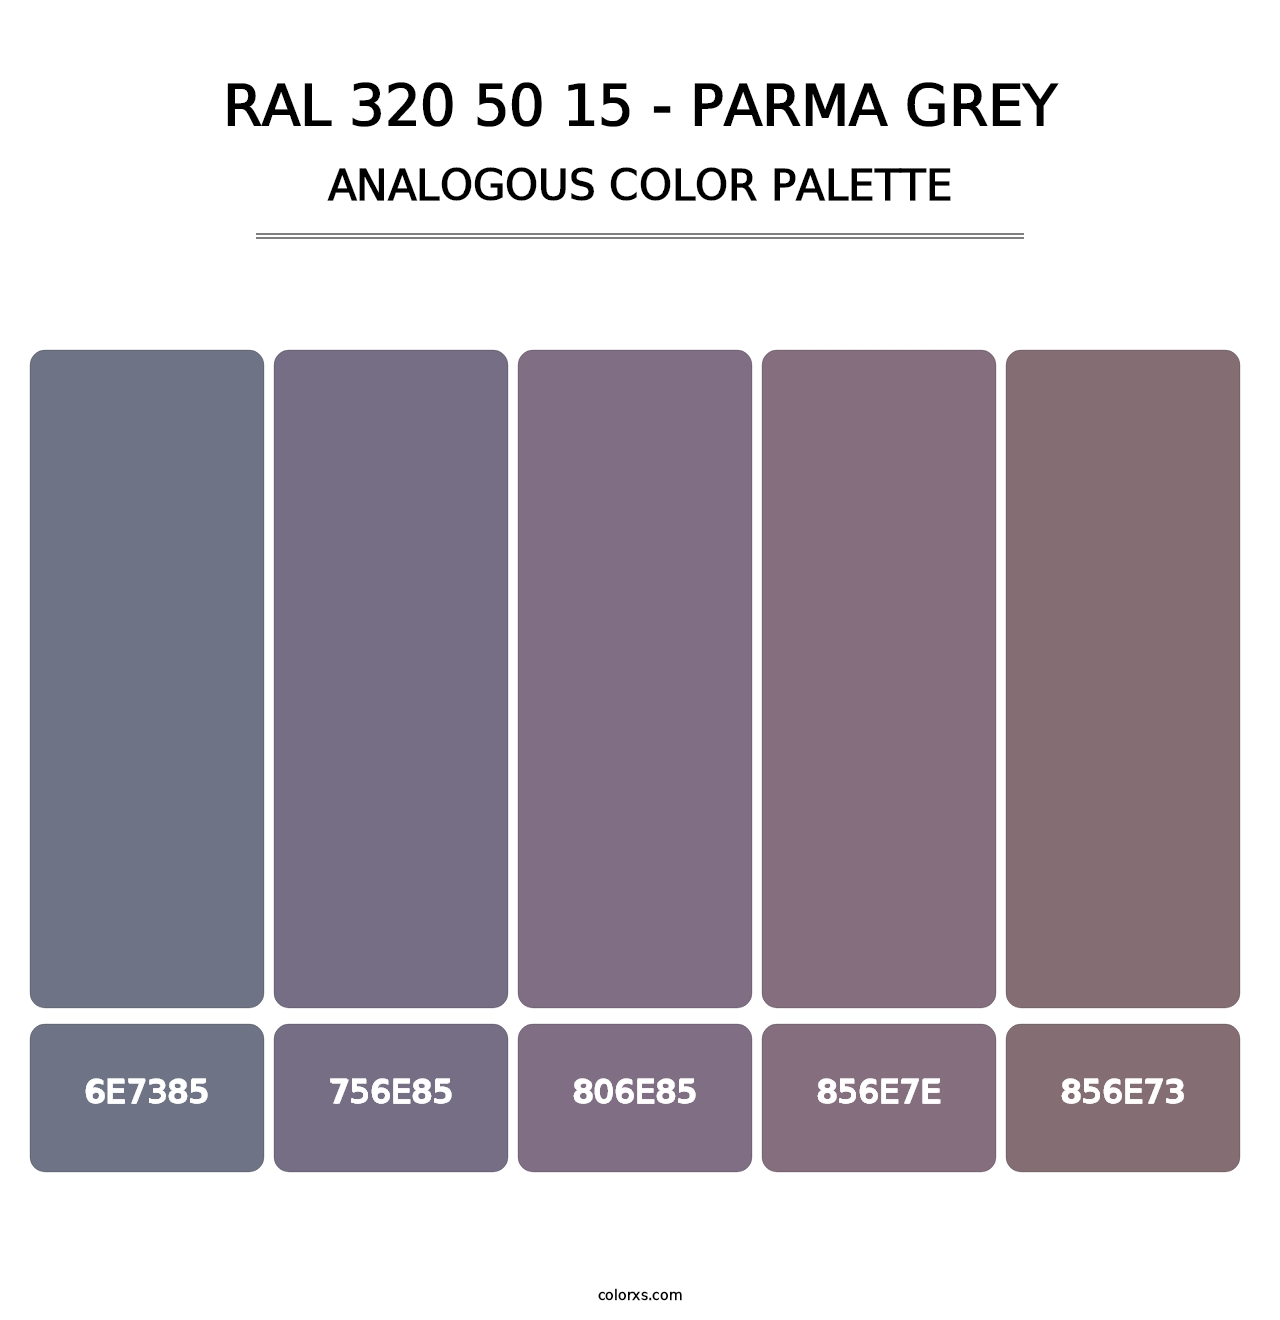 RAL 320 50 15 - Parma Grey - Analogous Color Palette